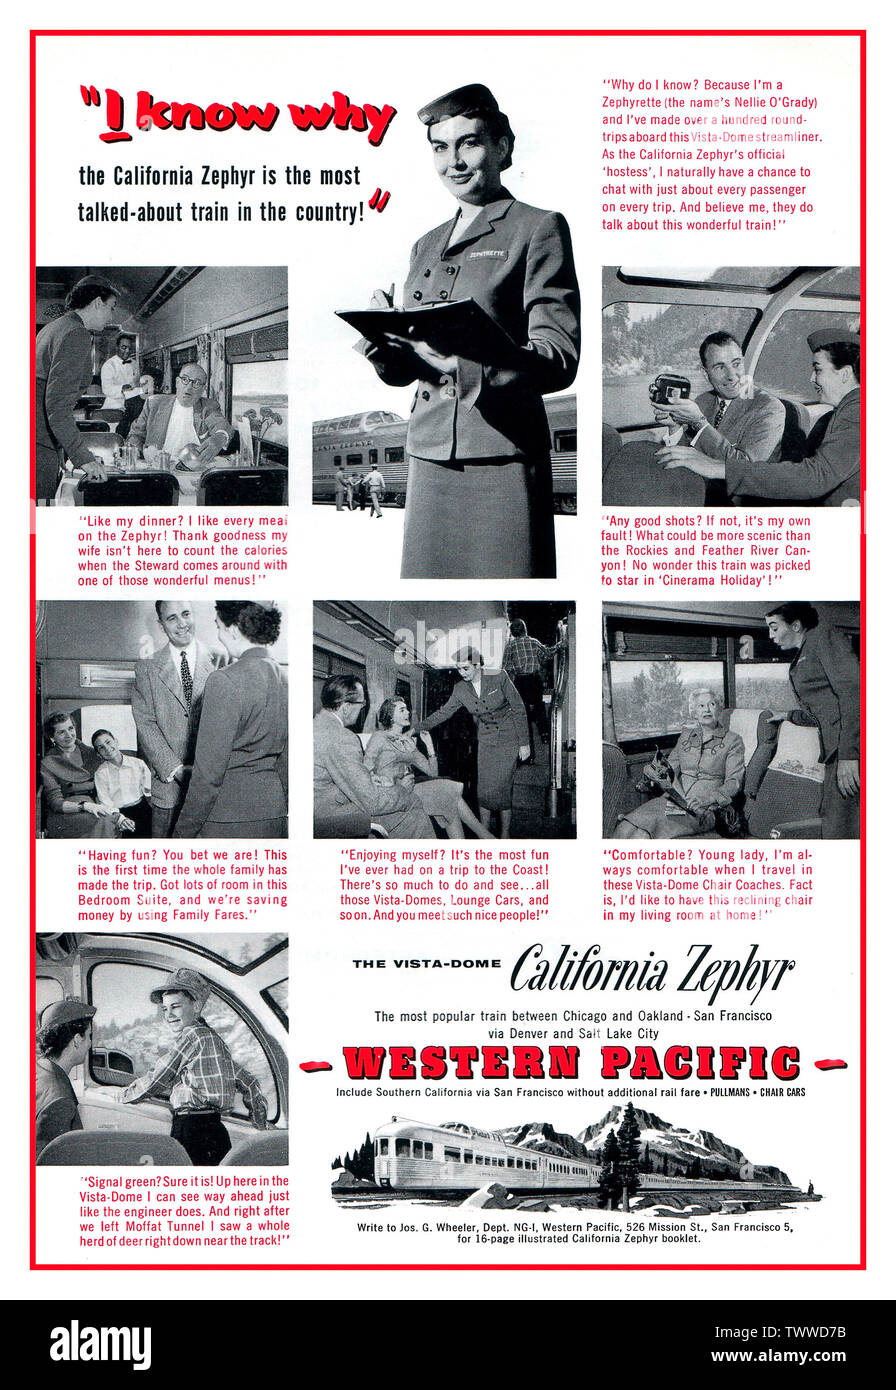 CALIFORNIA ZEPHYR 1950er Vintage American Rail Train 1956 Werbespot für California Zephyr im Western Pacific, in dem eine uniformierte Zugbegleiterin Zephyrette mit einer Vielzahl von Fahrgästen an Bord des Zuges interagiert. Februar 1956 Werbung für die California Zephyr Western Pacific Train Railroad Railway Stockfoto